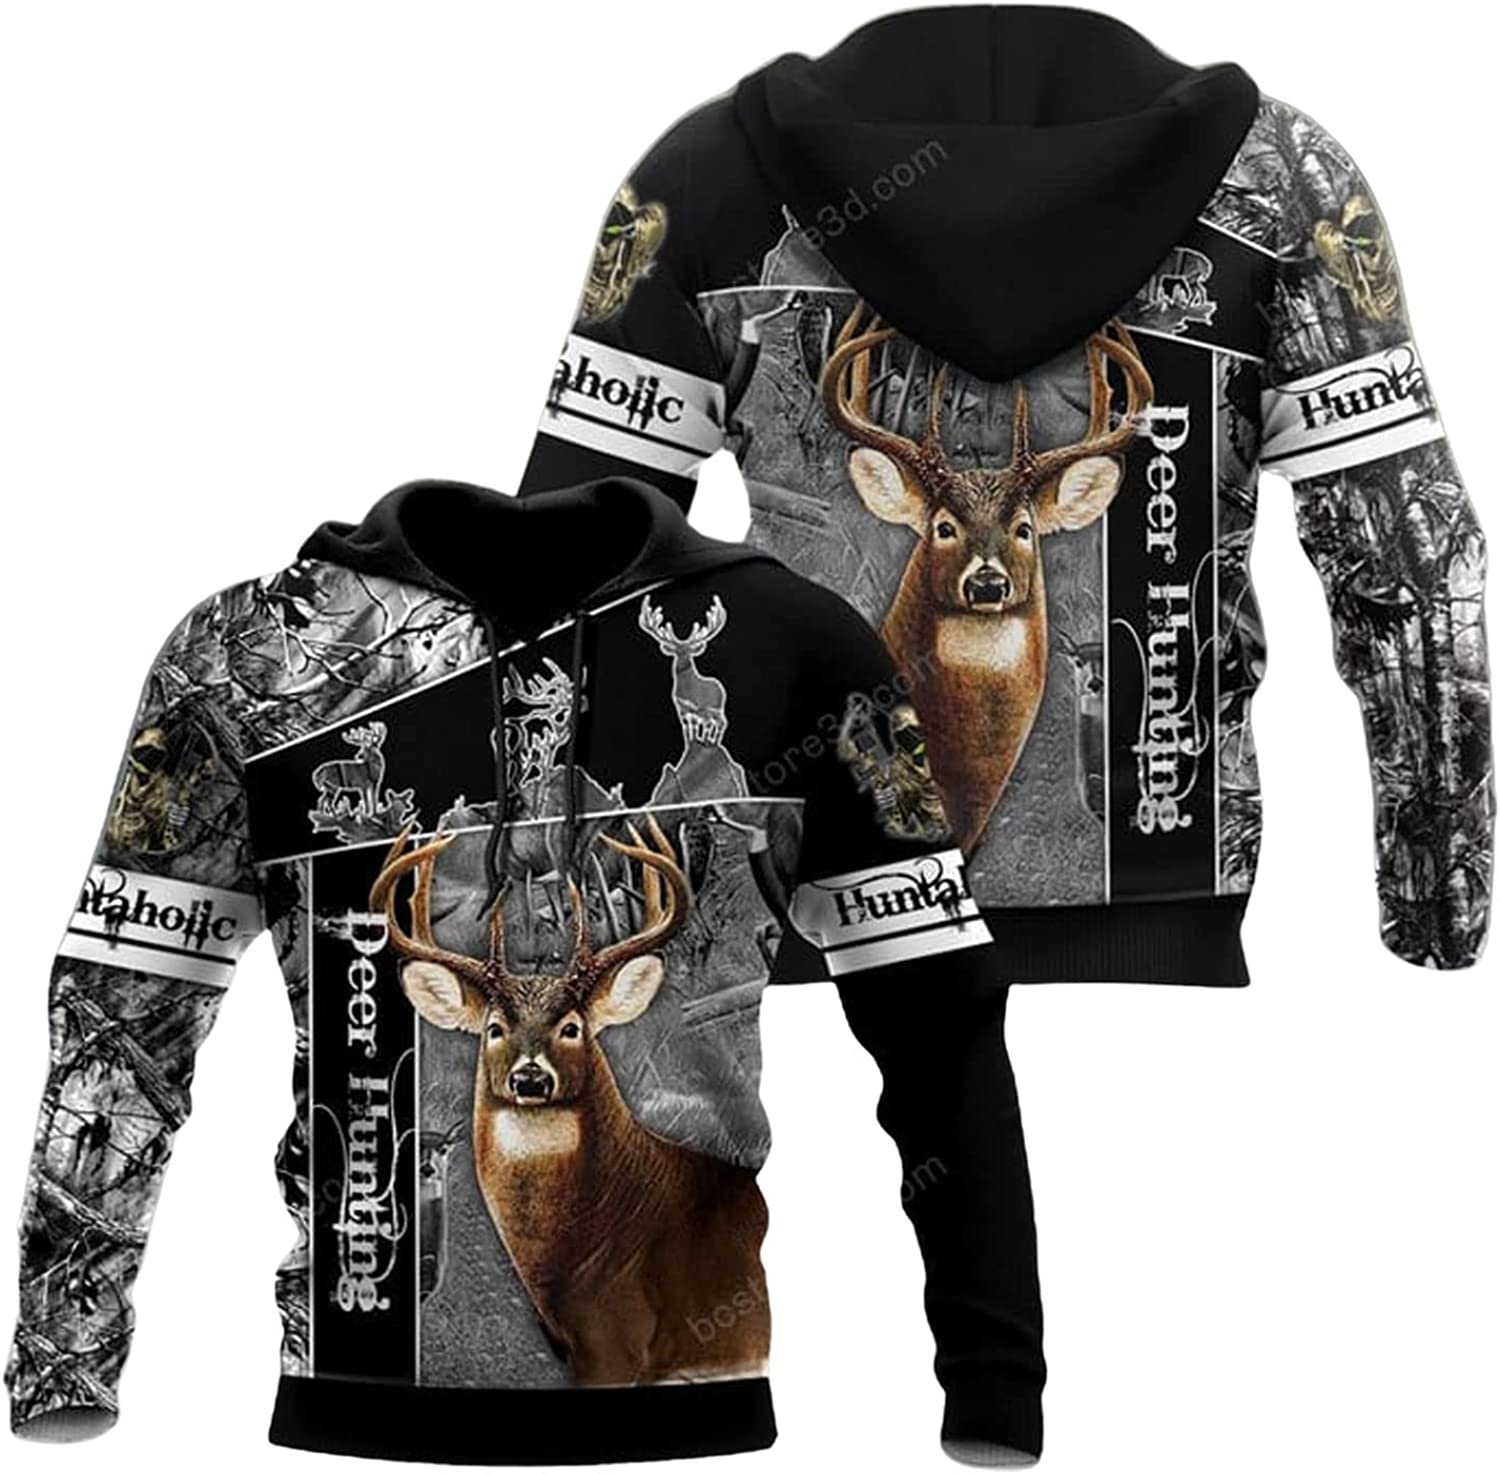 Deer Hunting 3D Shirt for Men & Women – Full Print Animal Design, Perfect Gift for Deer Hunter Lovers and Families – JOT1537